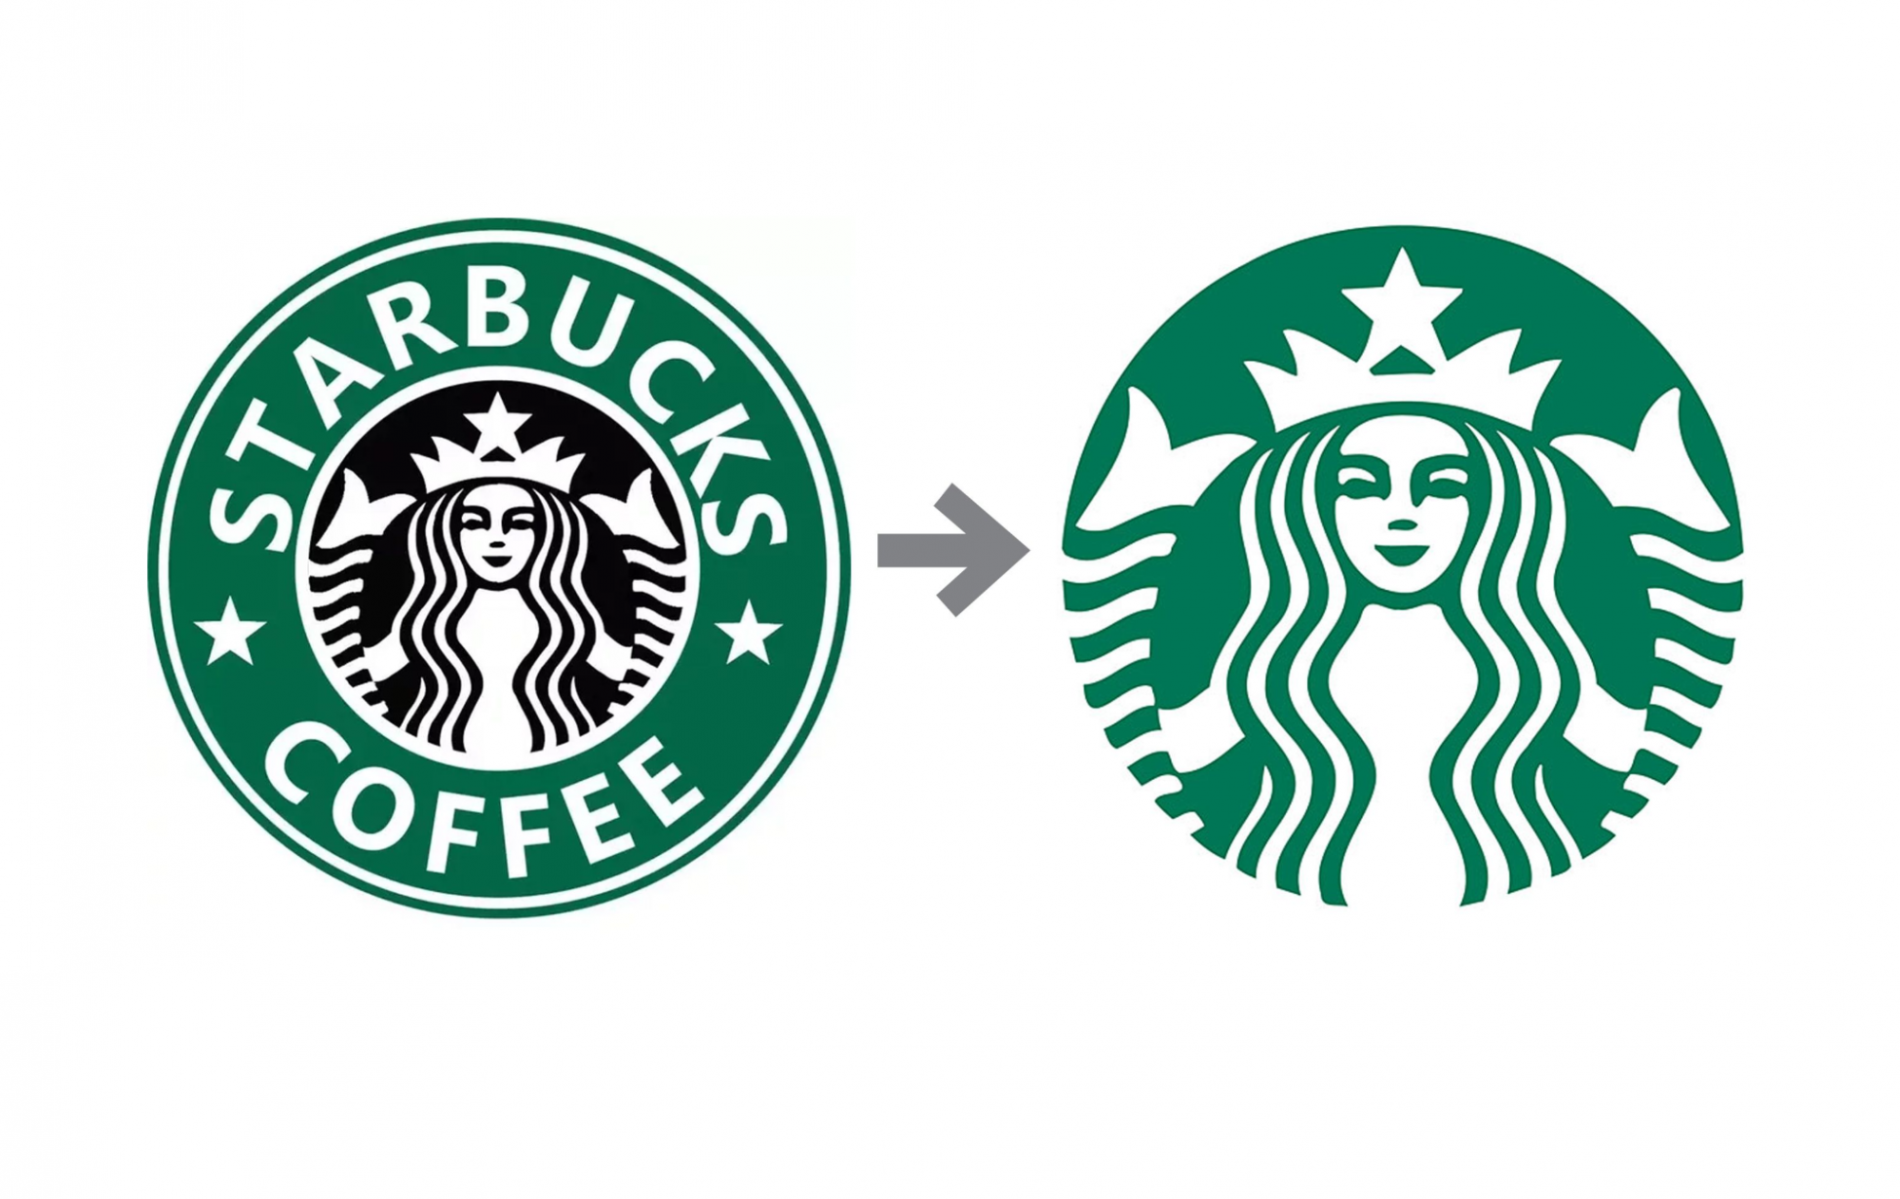 Logo Starbucks